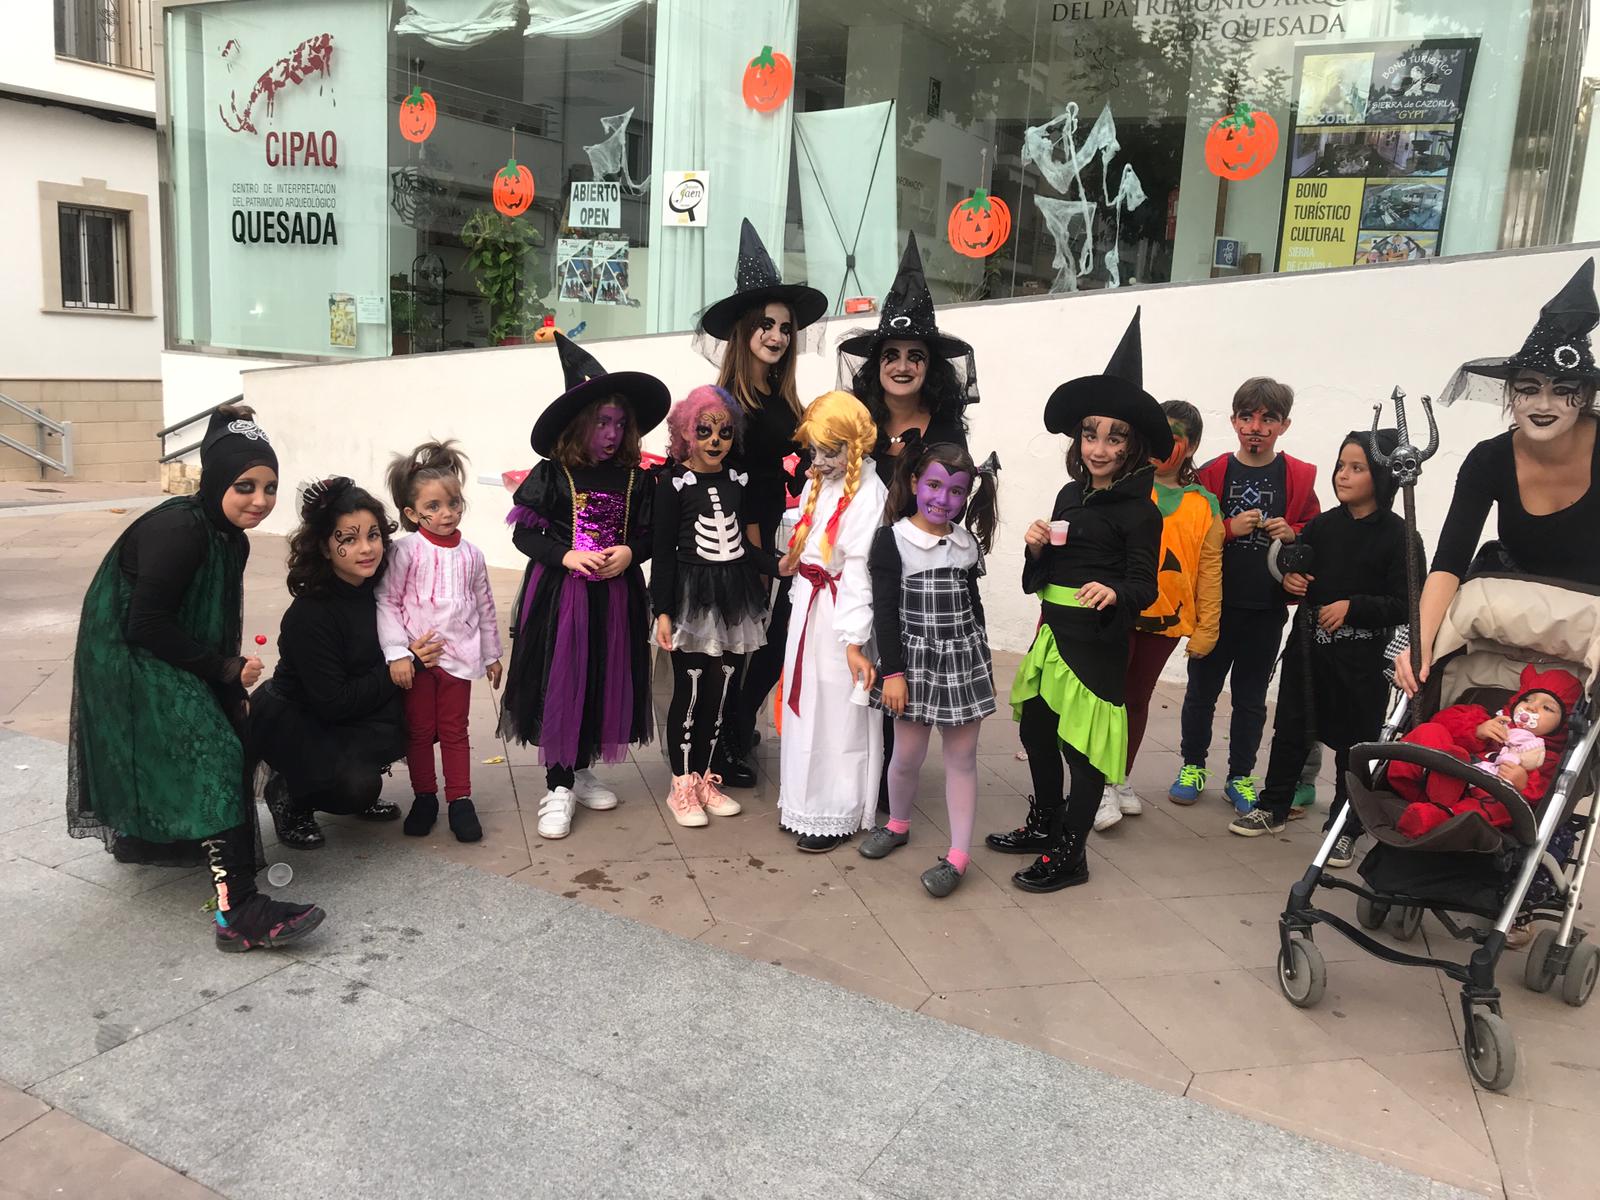 Fiesta de Halloween en Quesada